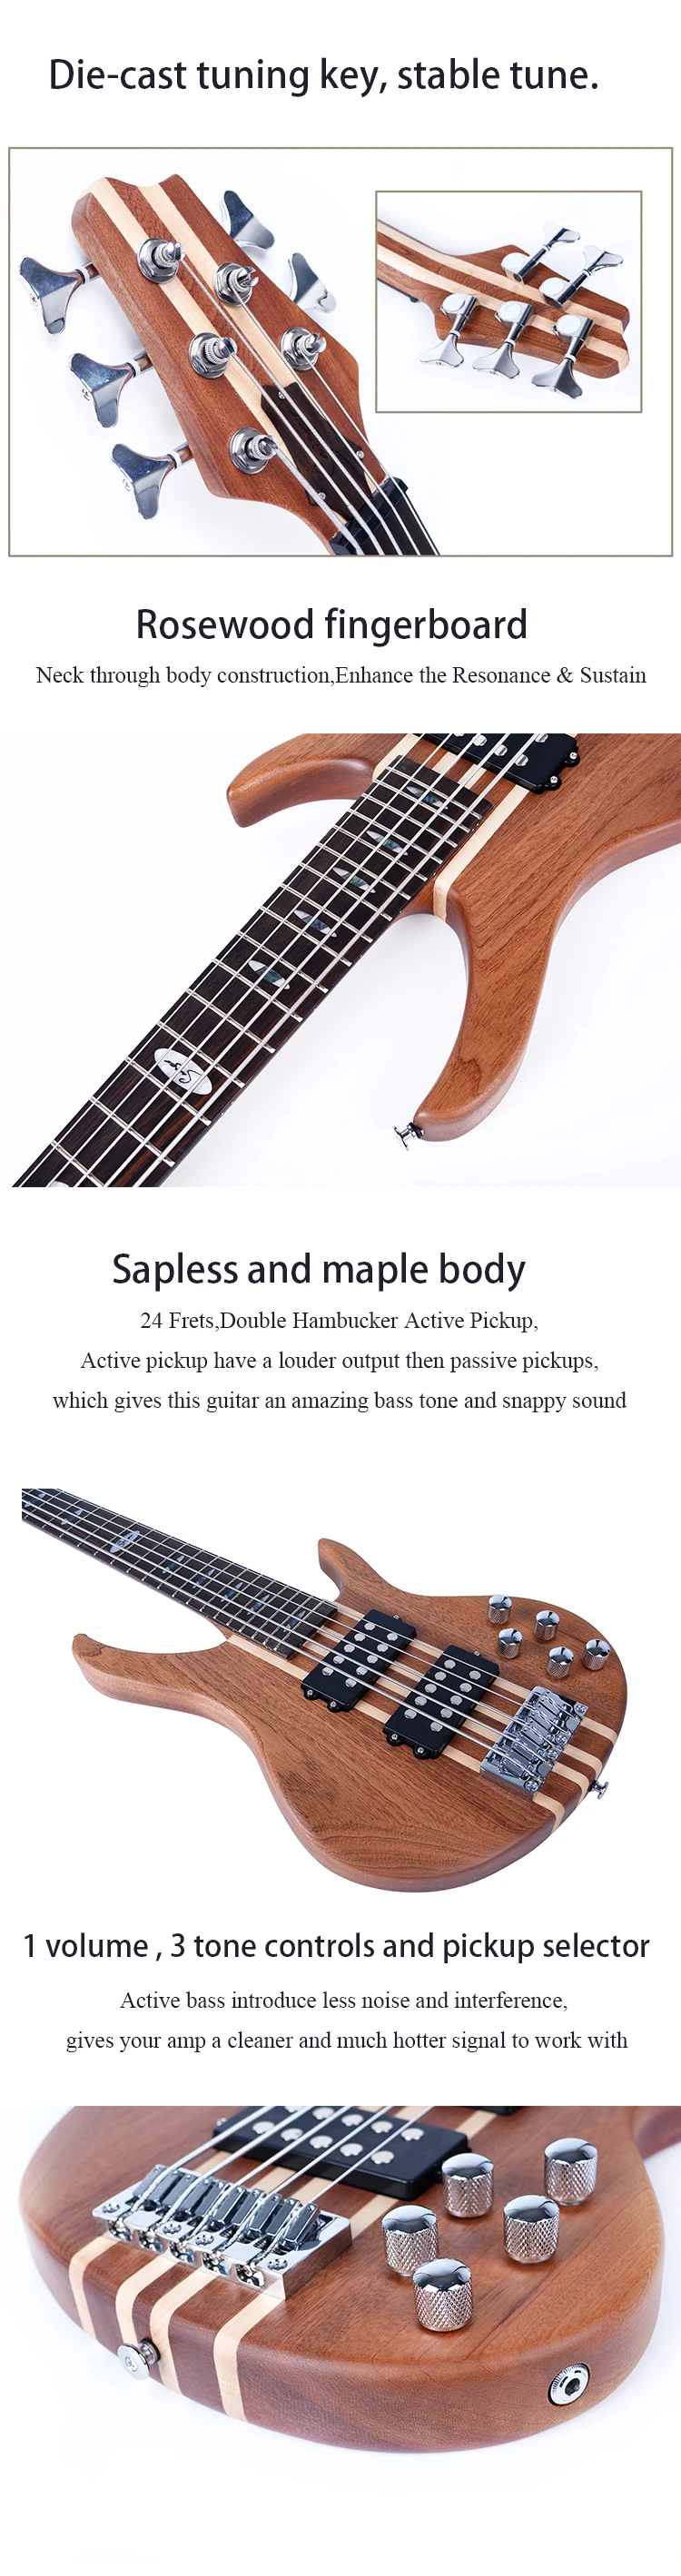 ボディ5弦ベースギターg B50 T5卸売アクティブピックアップネック Buy 卸売ベースギター 5 弦ベース ネックボディ低音 Product On Alibaba Com